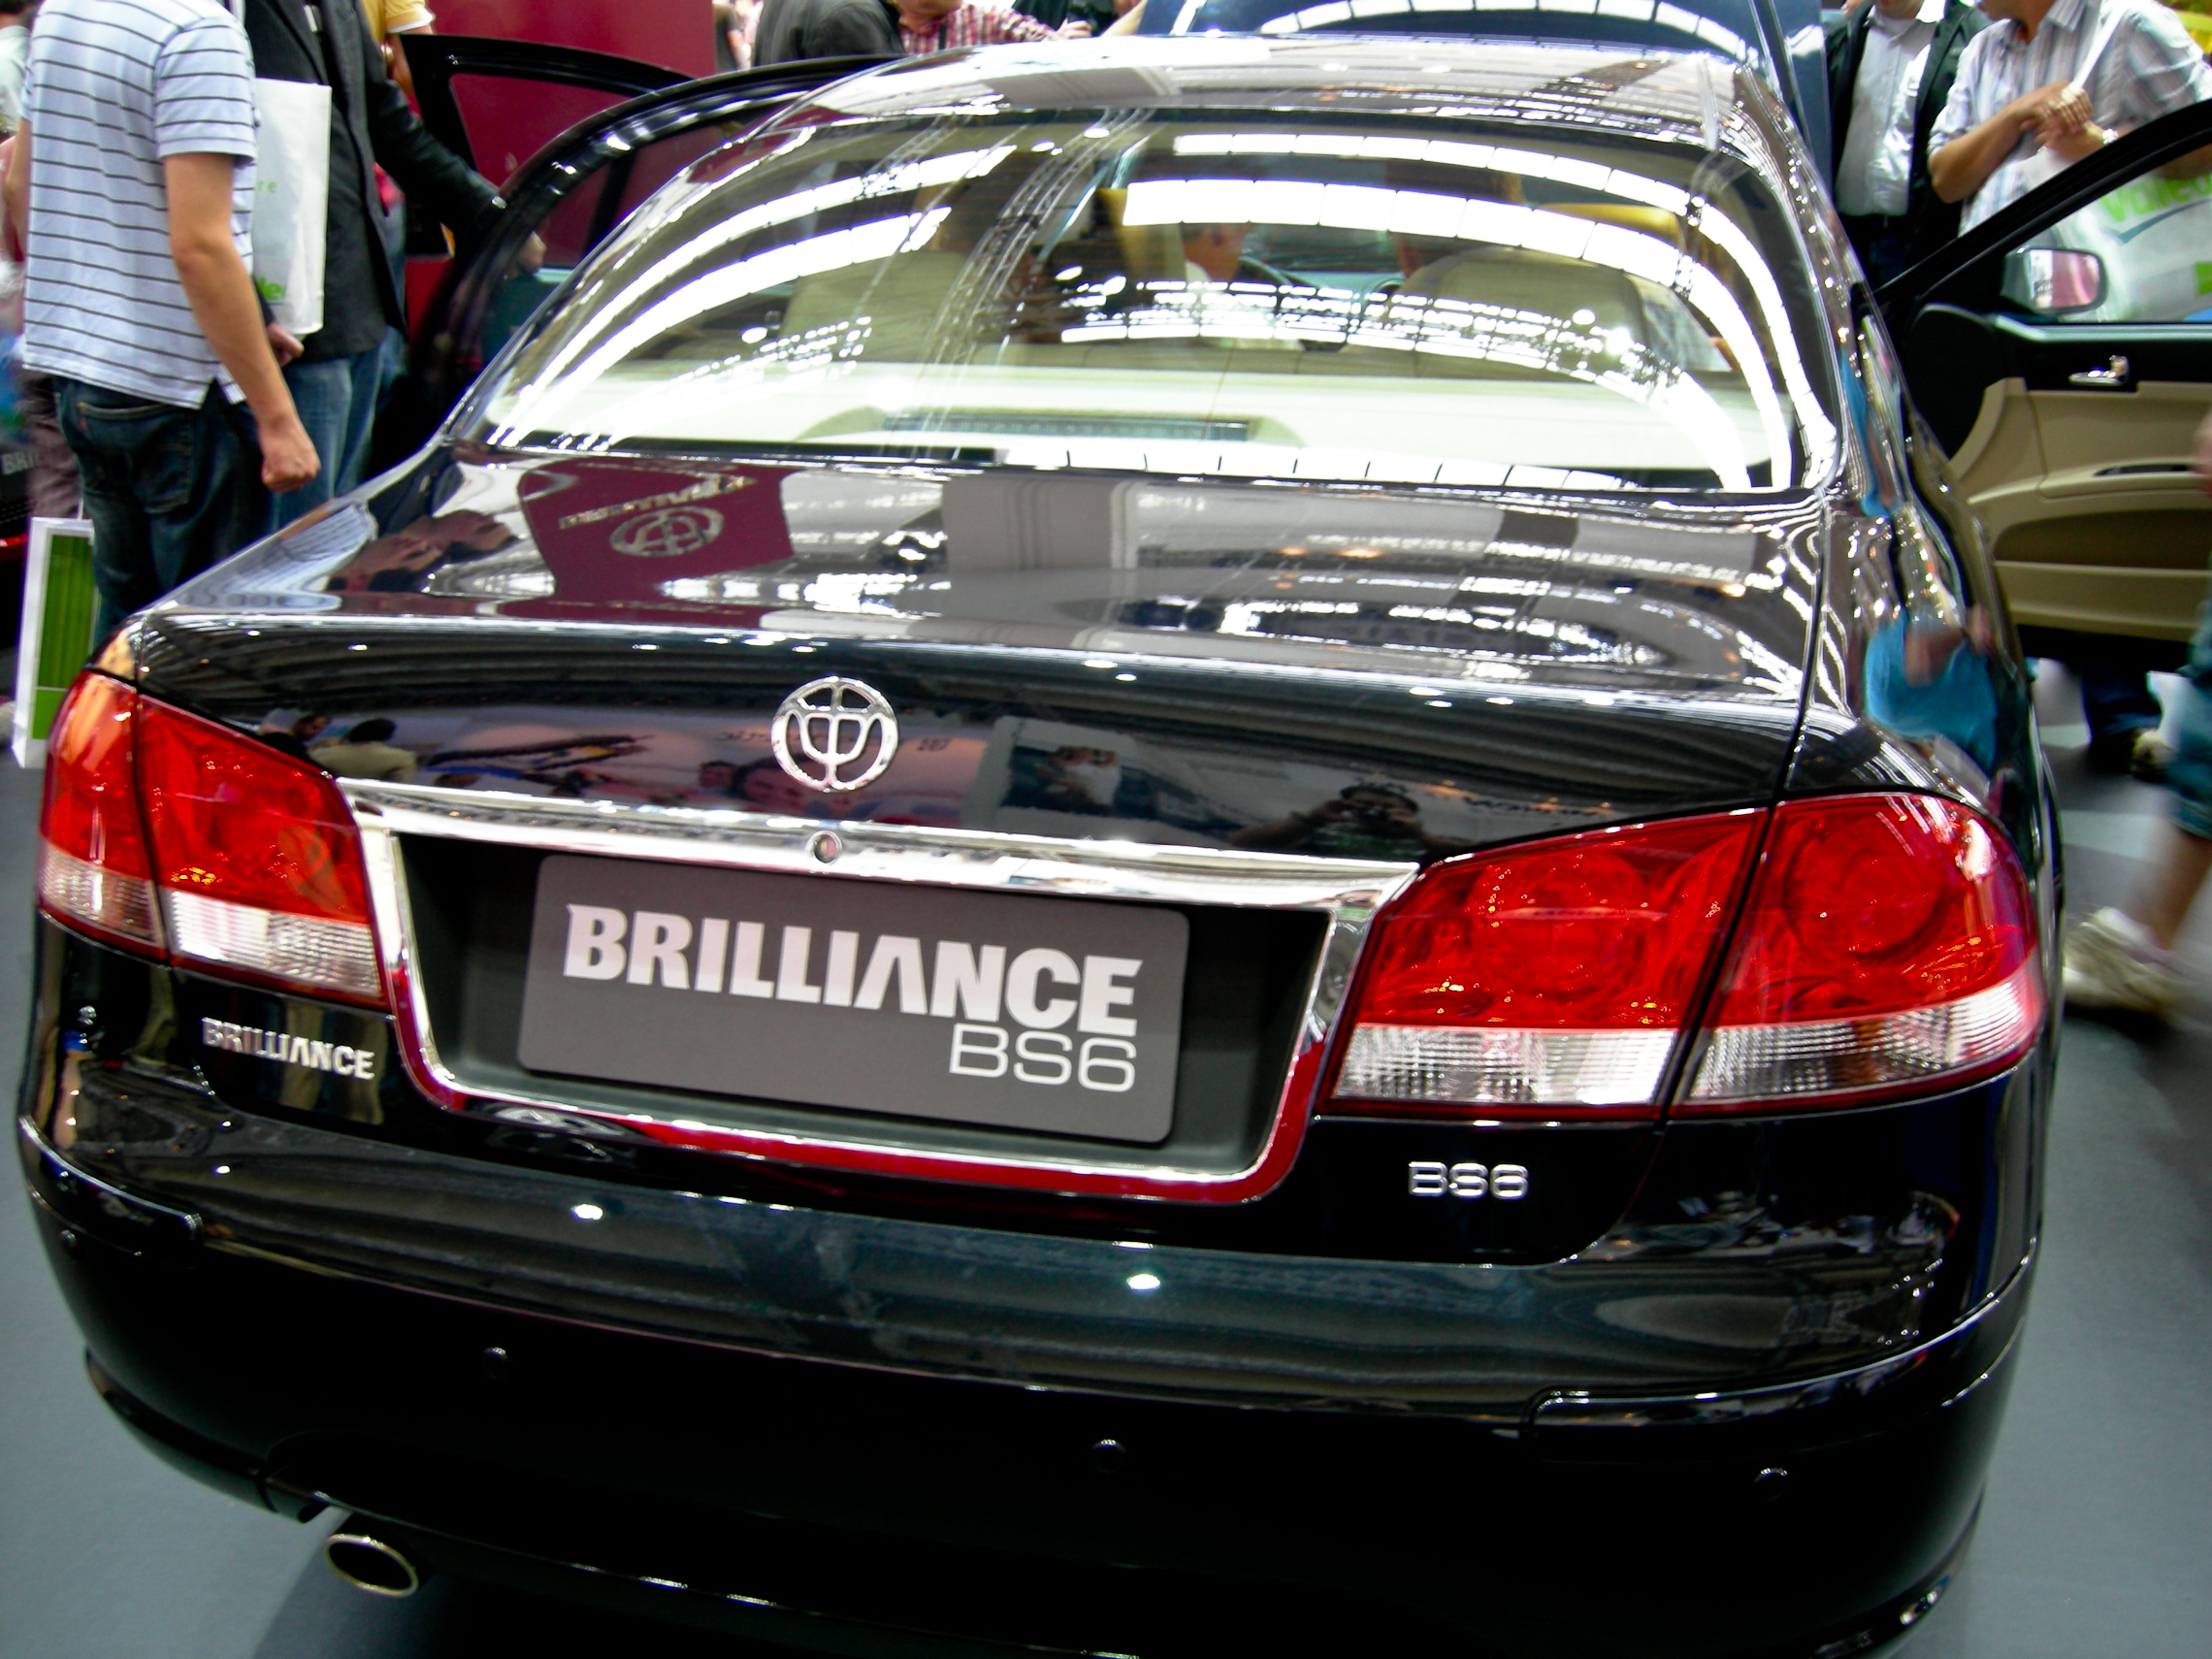 IAA 2007 - Brilliance BS6 | Flickr - Partage de photos!